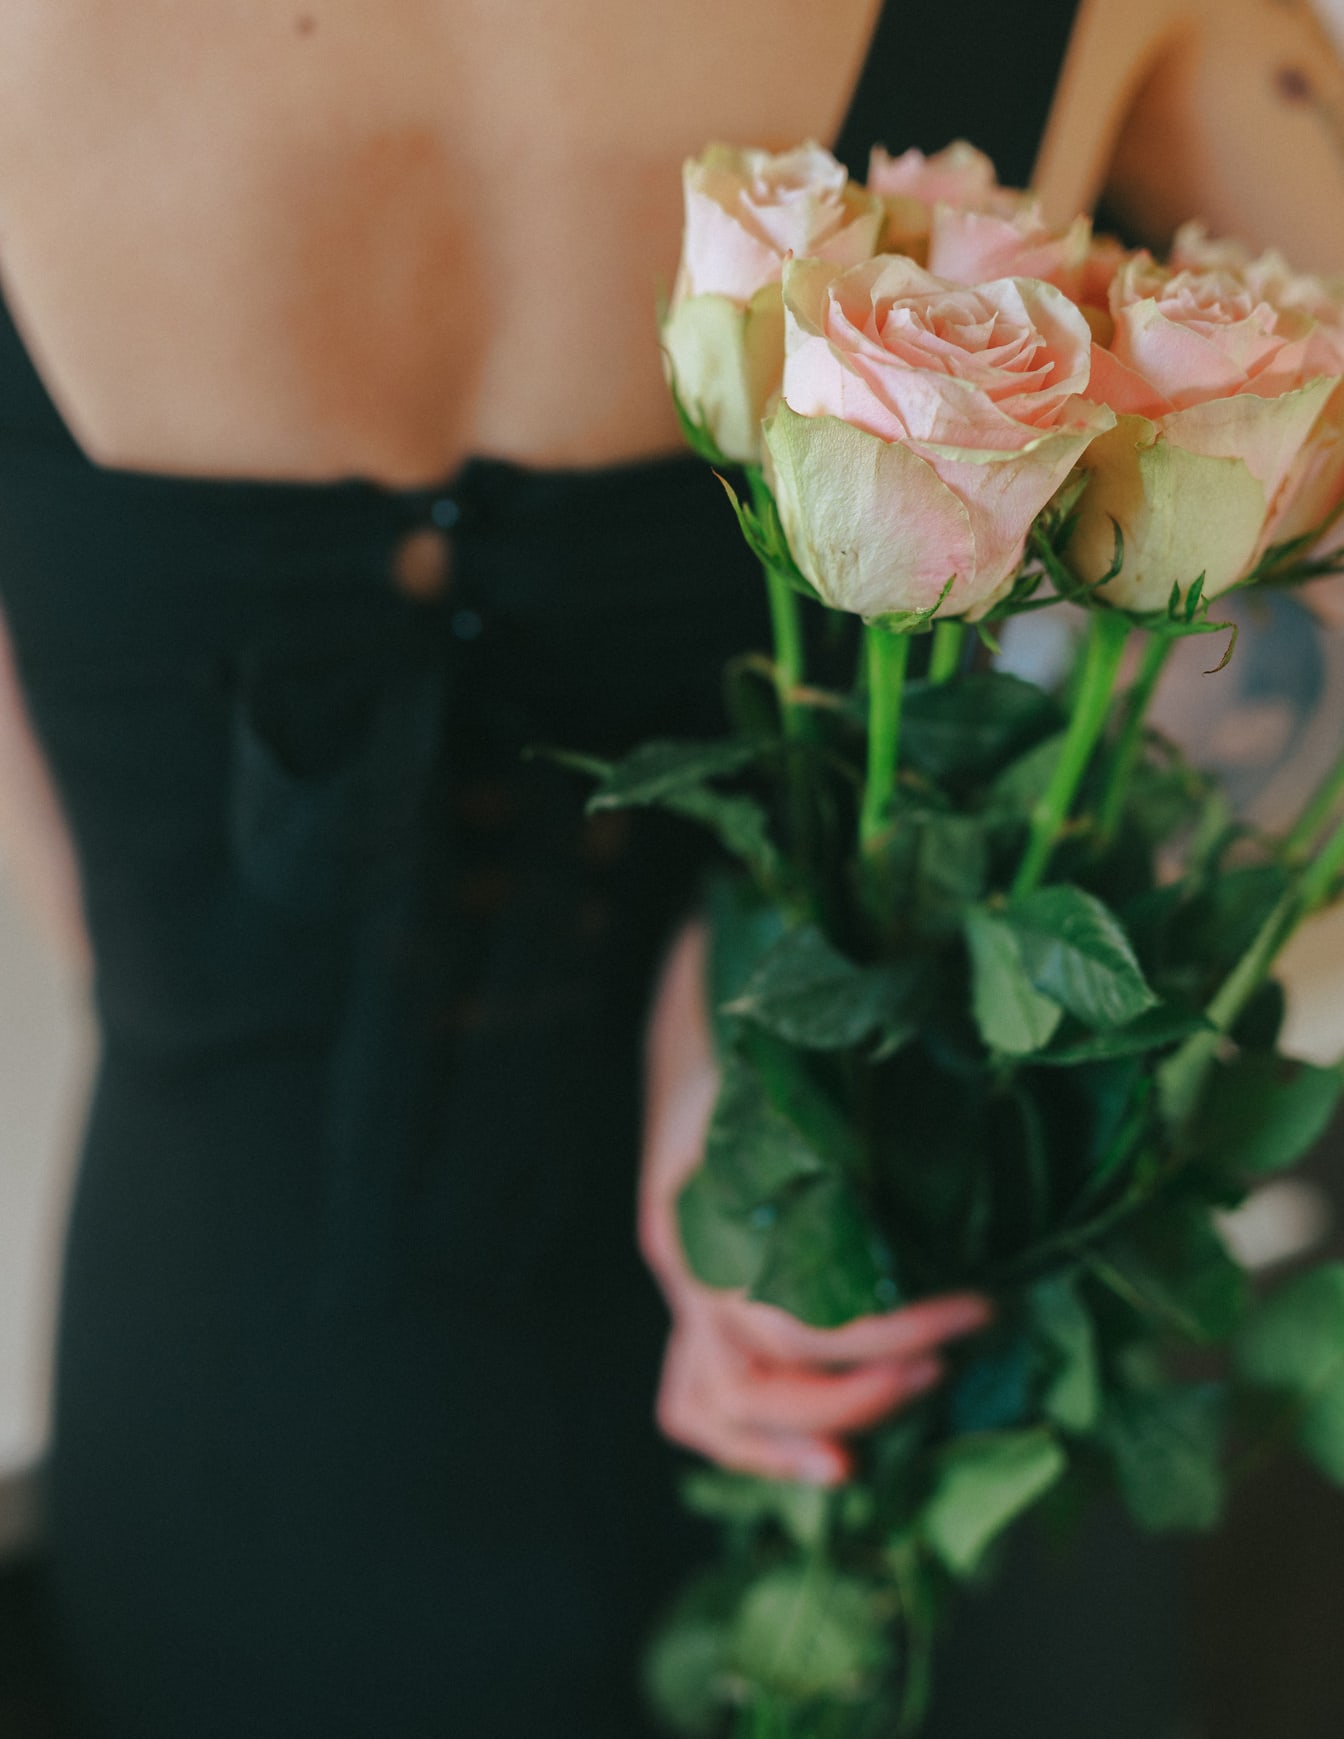 Người phụ nữ cầm một bó hoa hồng màu hồng rực rỡ trên lưng